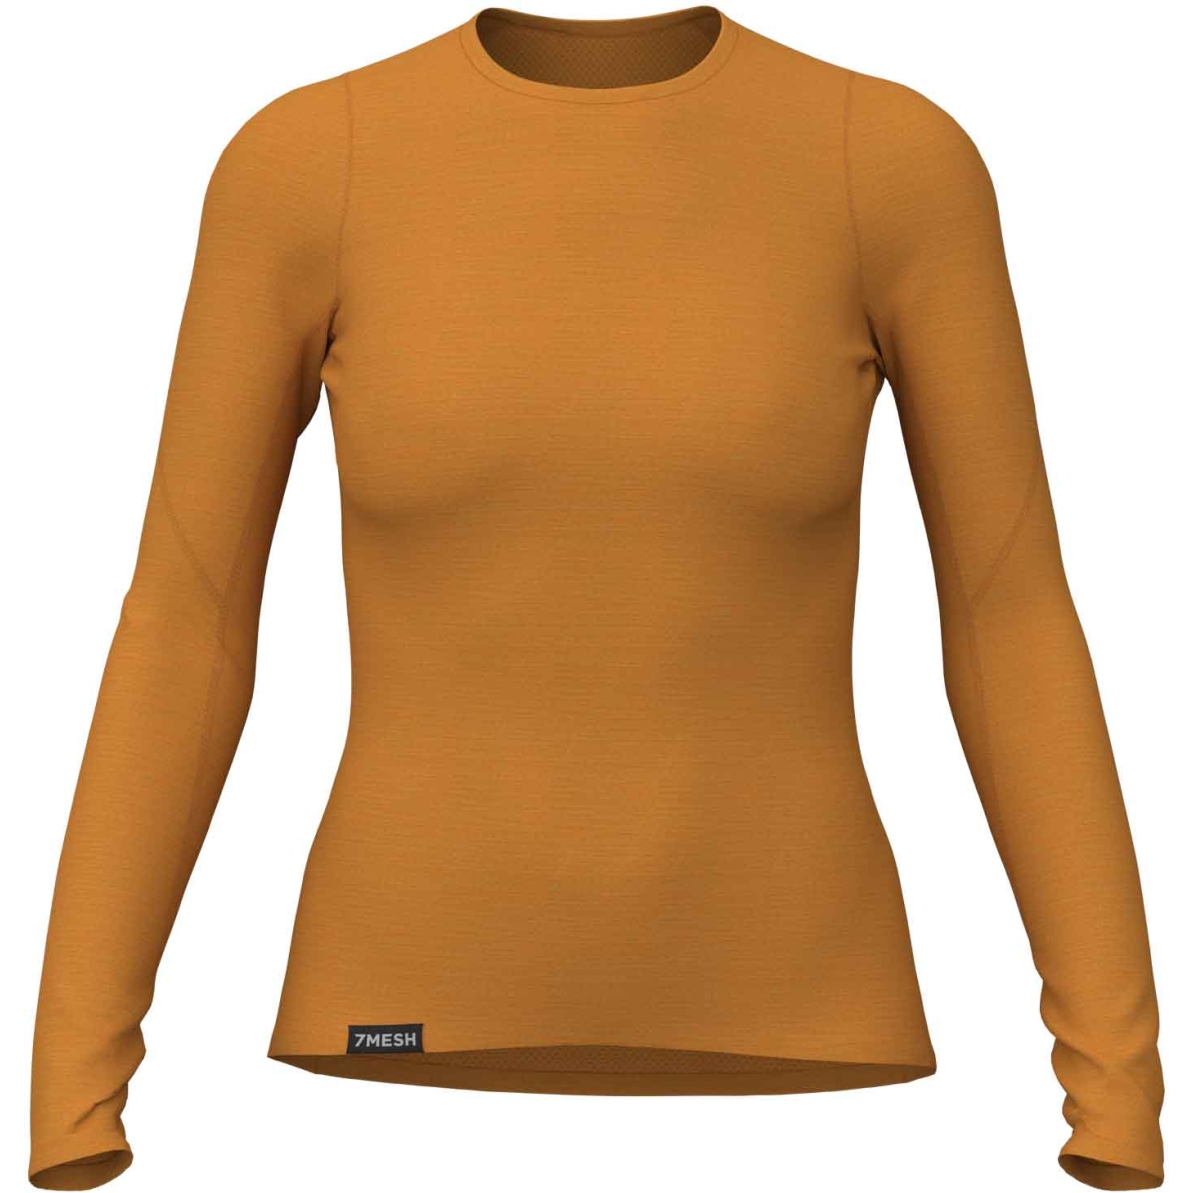 Produktbild von 7mesh Horizon Langarm-Unterhemd Damen - Butterscotch